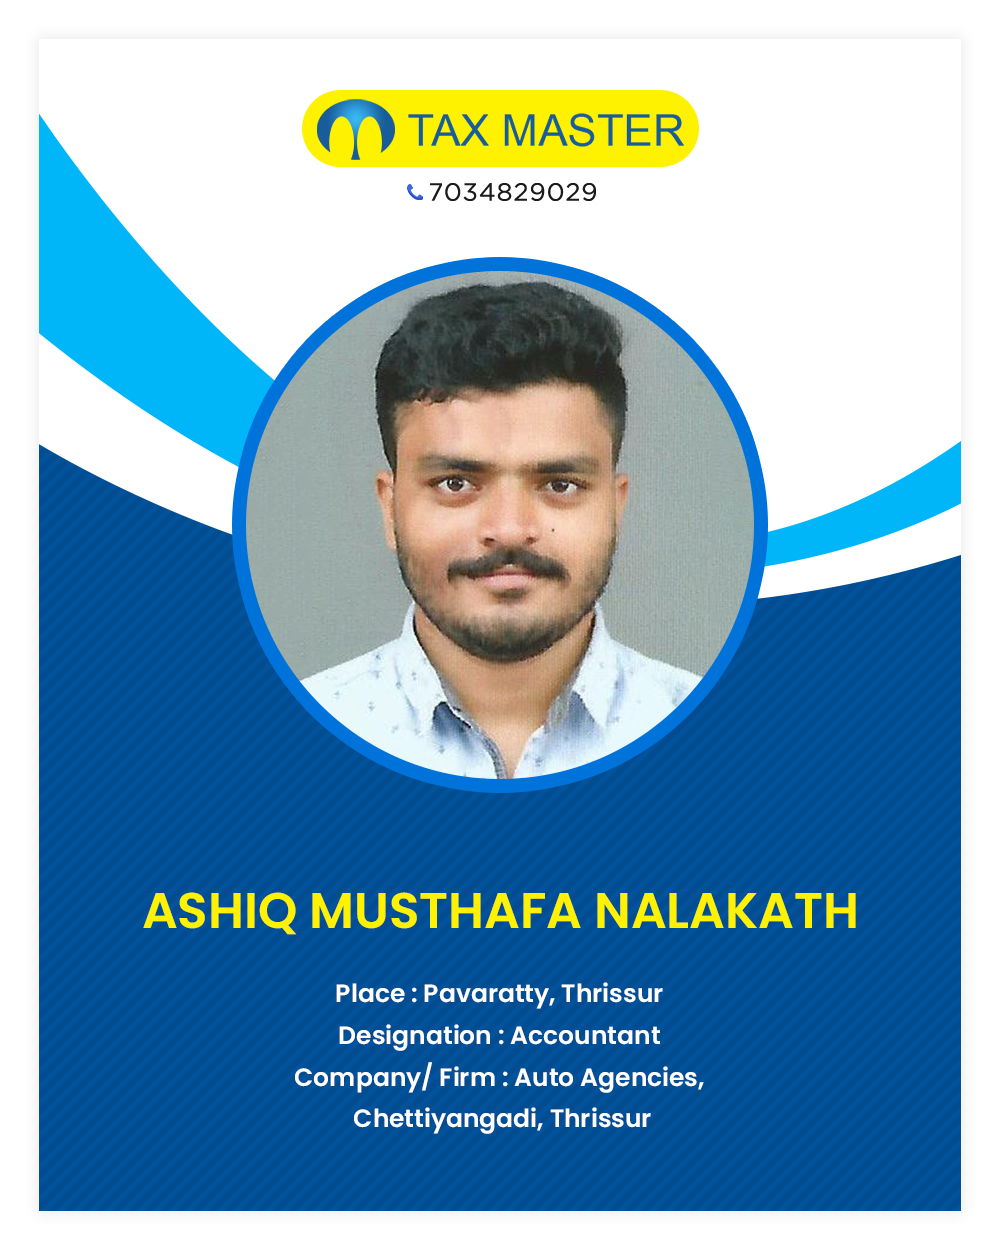 Ashiq Accounting firm